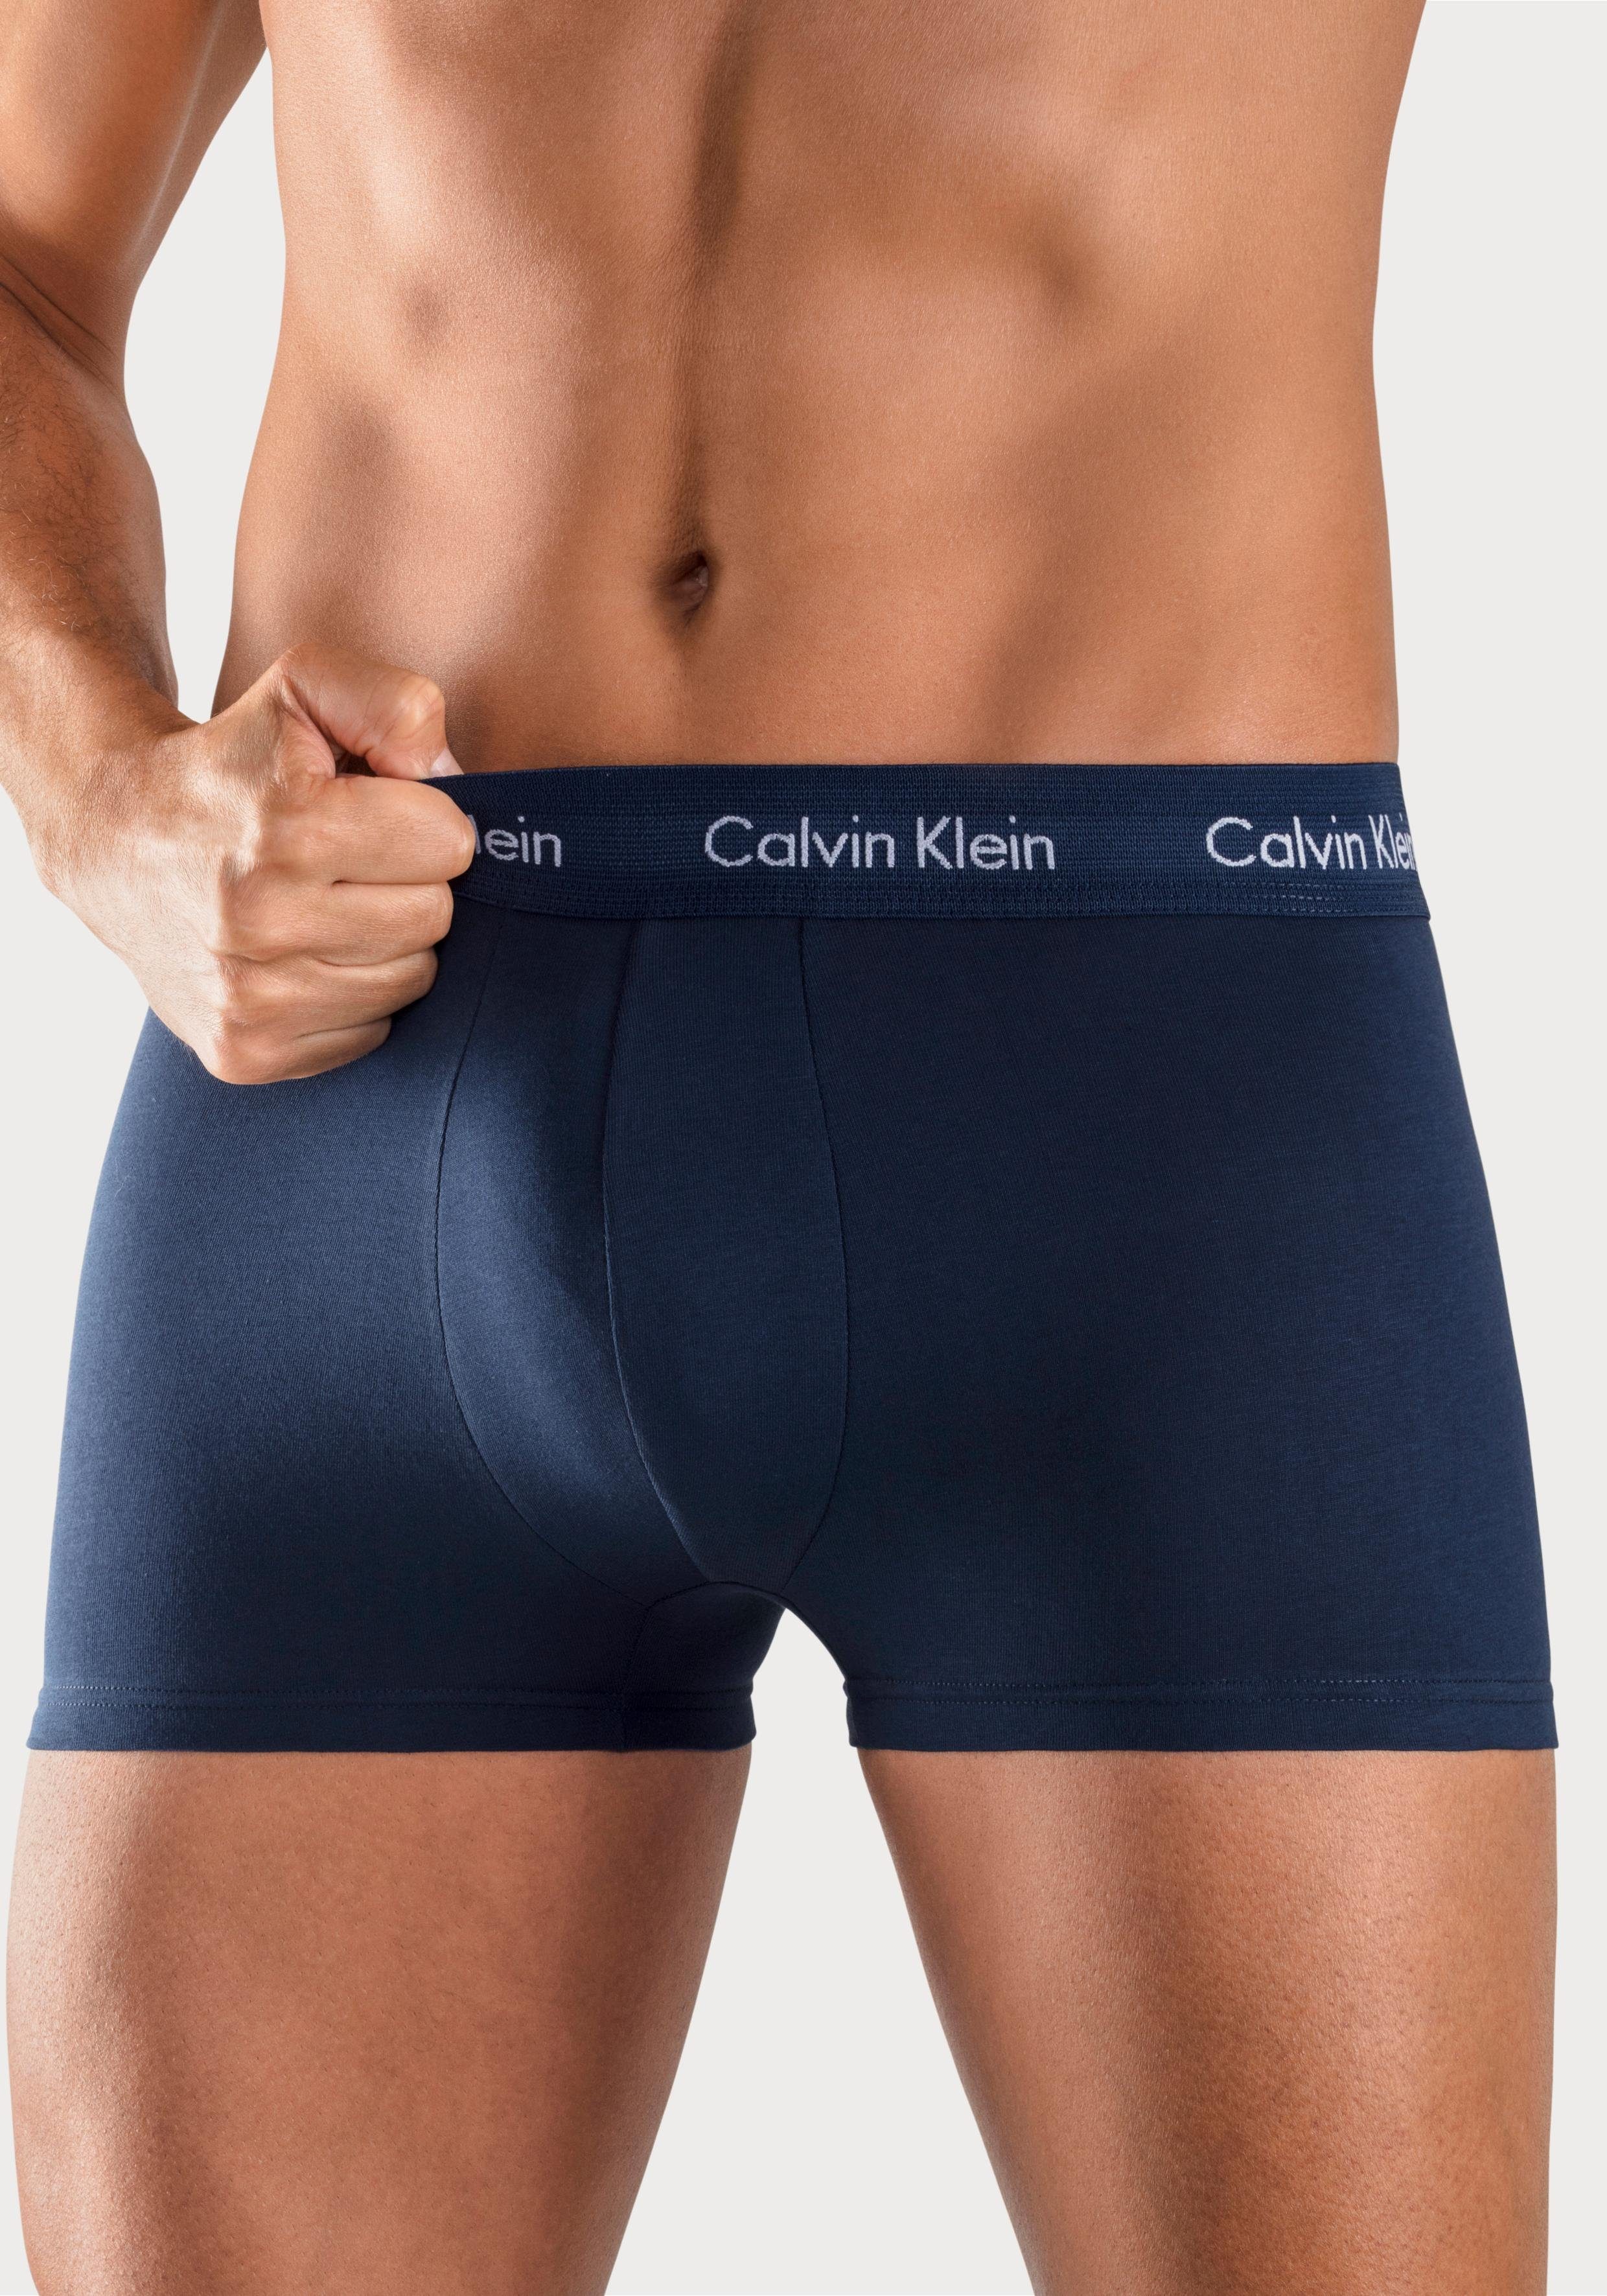 Vegen Sport Ambtenaren Calvin Klein Boxershort in blauwtinten (3 stuks) online verkrijgbaar |  LASCANA